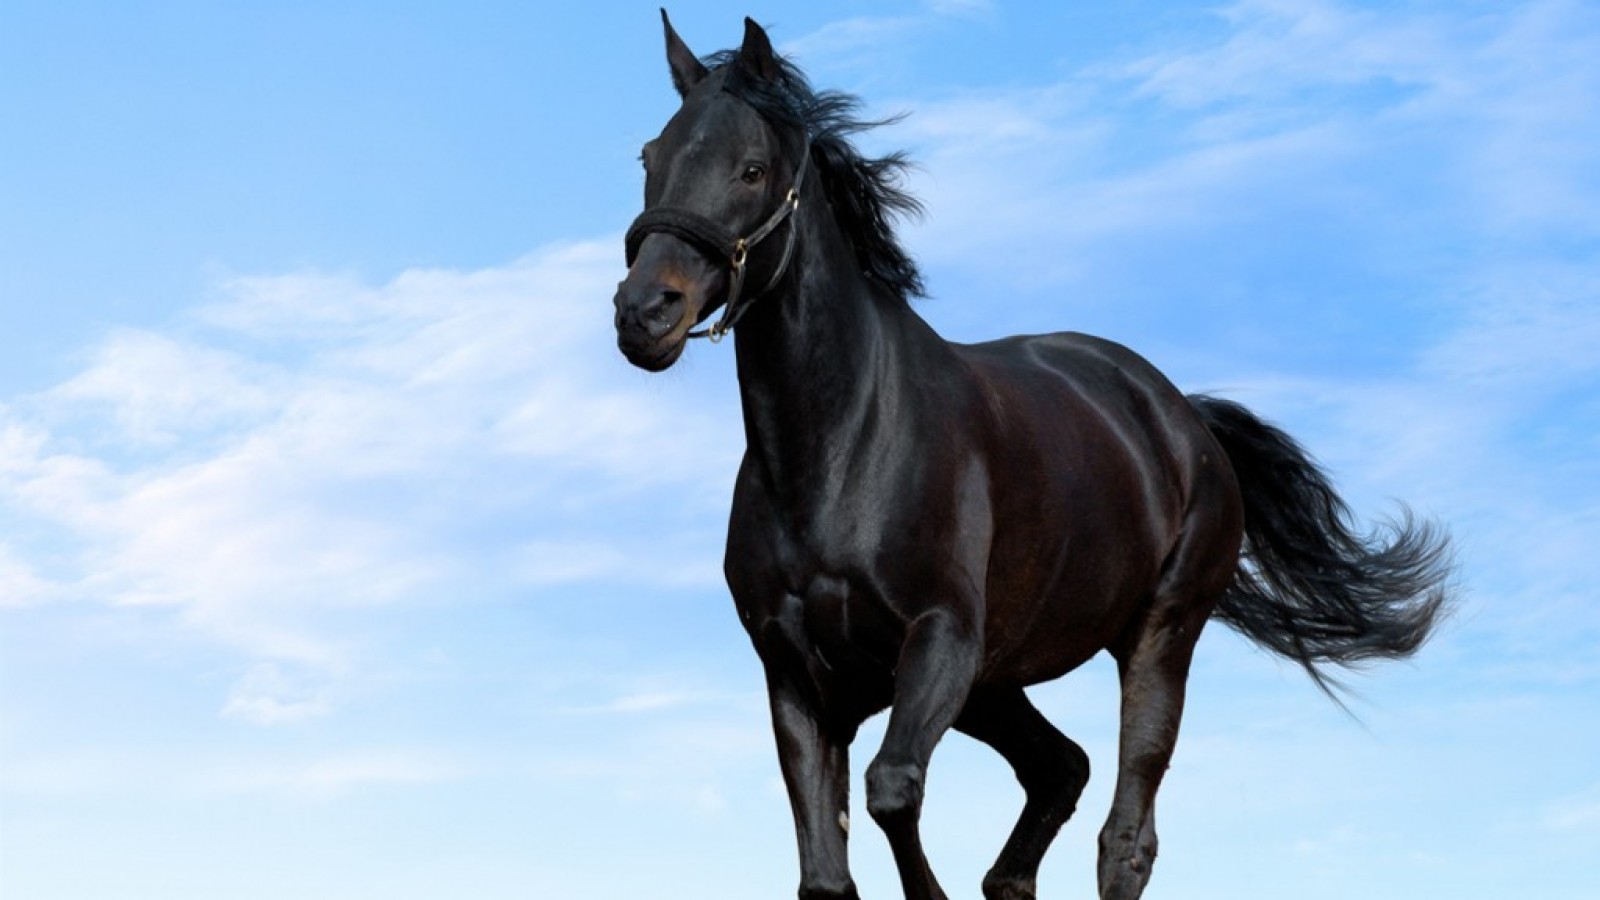 Black Horse Wallpaper Of Animals 1600x900 pixel Popular HD Wallpaper